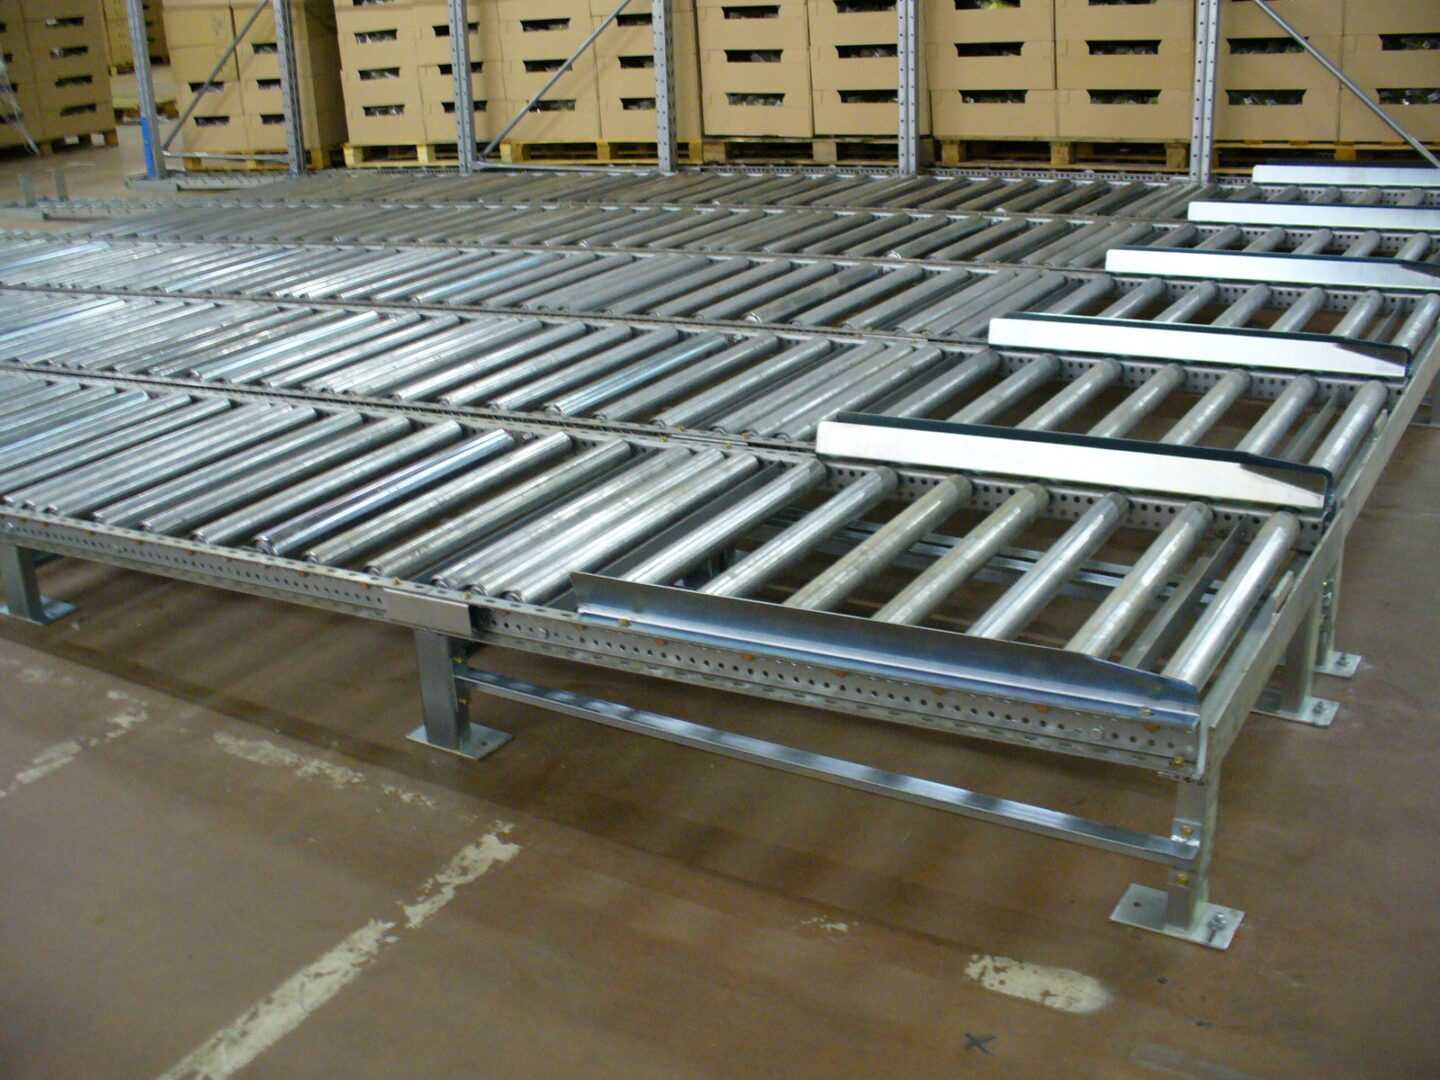 Système de stockage dynamique pour palettes dans un environnement de stockage au froid, avec des rouleaux métalliques devant des étagères de cartons.